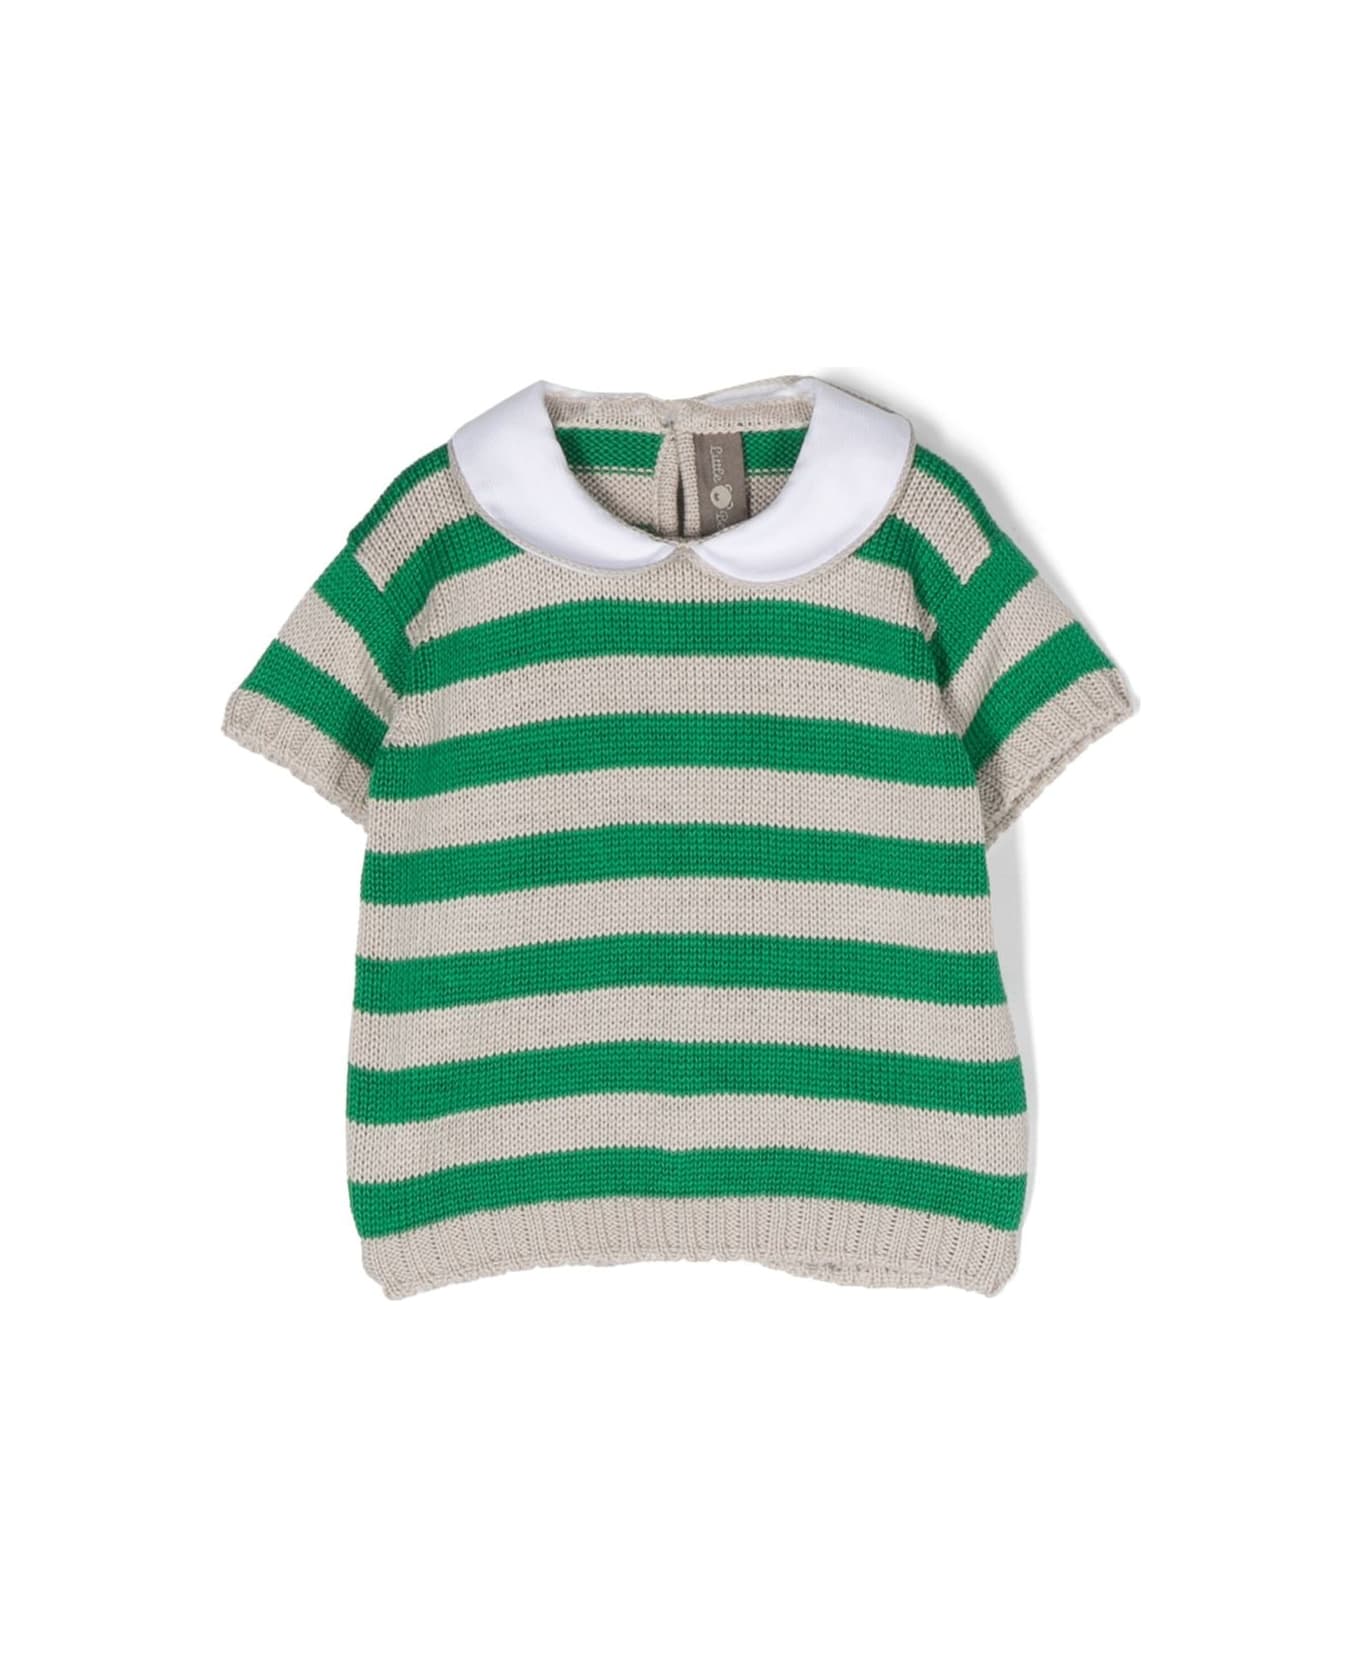 Little Bear Striped Shirt - Green